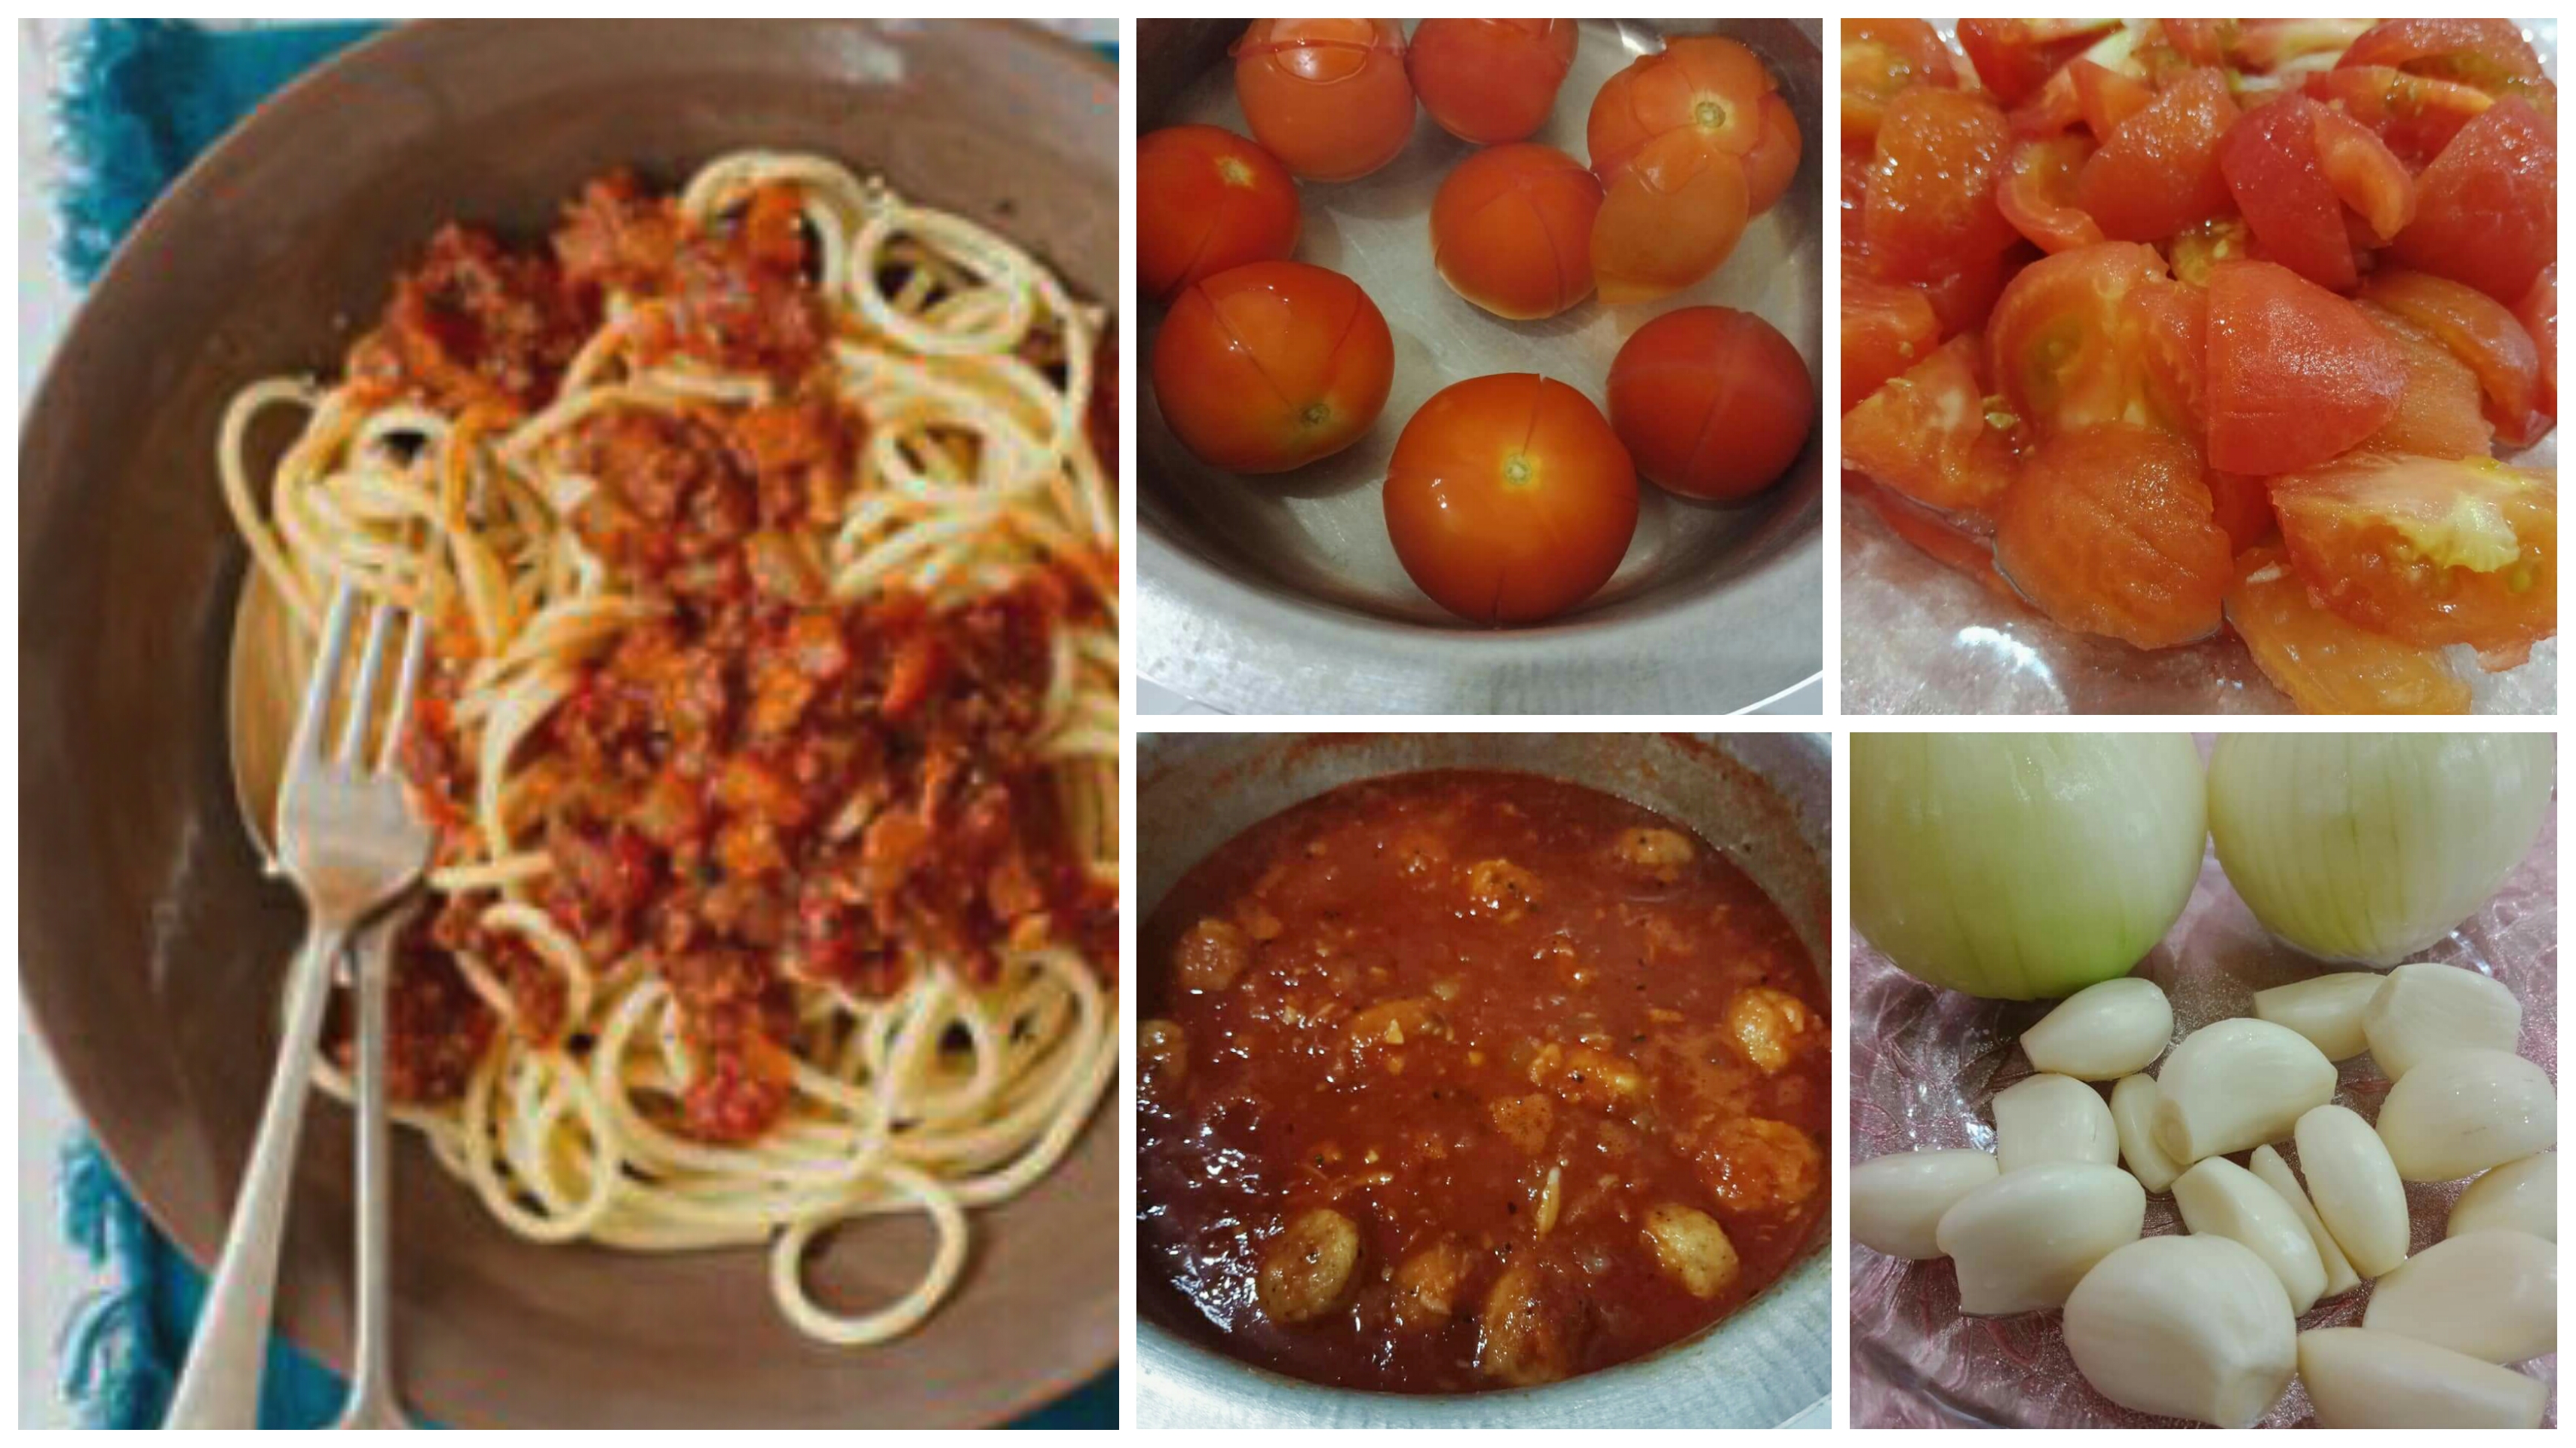 Cara Buat Kuah Spaghetti Bolognese Yang Lebih Sihat, Guna Bahan 'Fresh